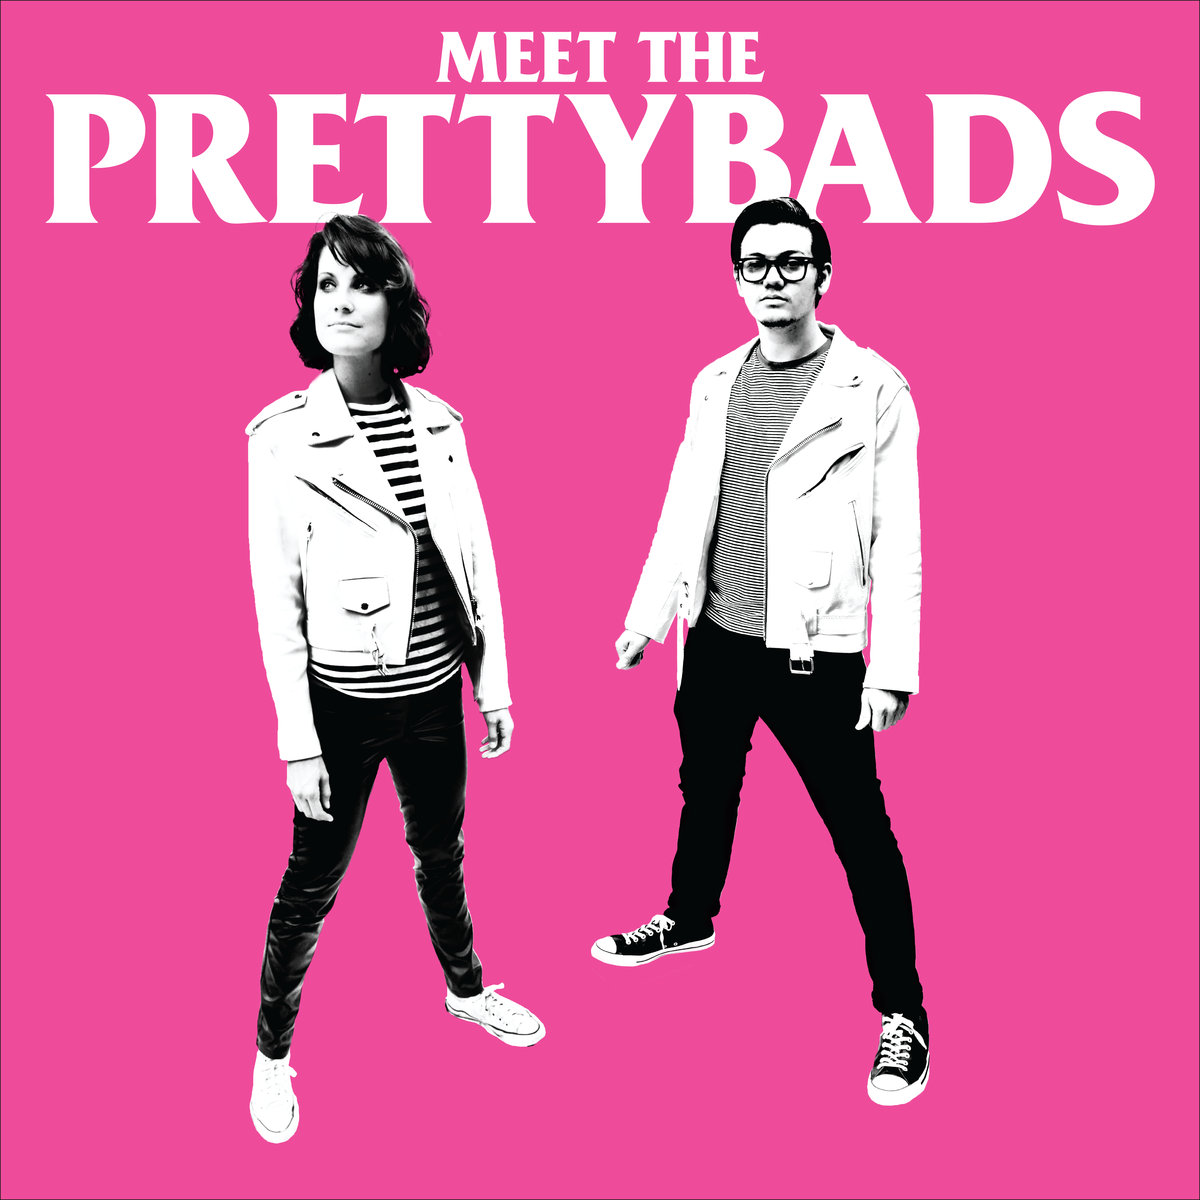 The Prettybads